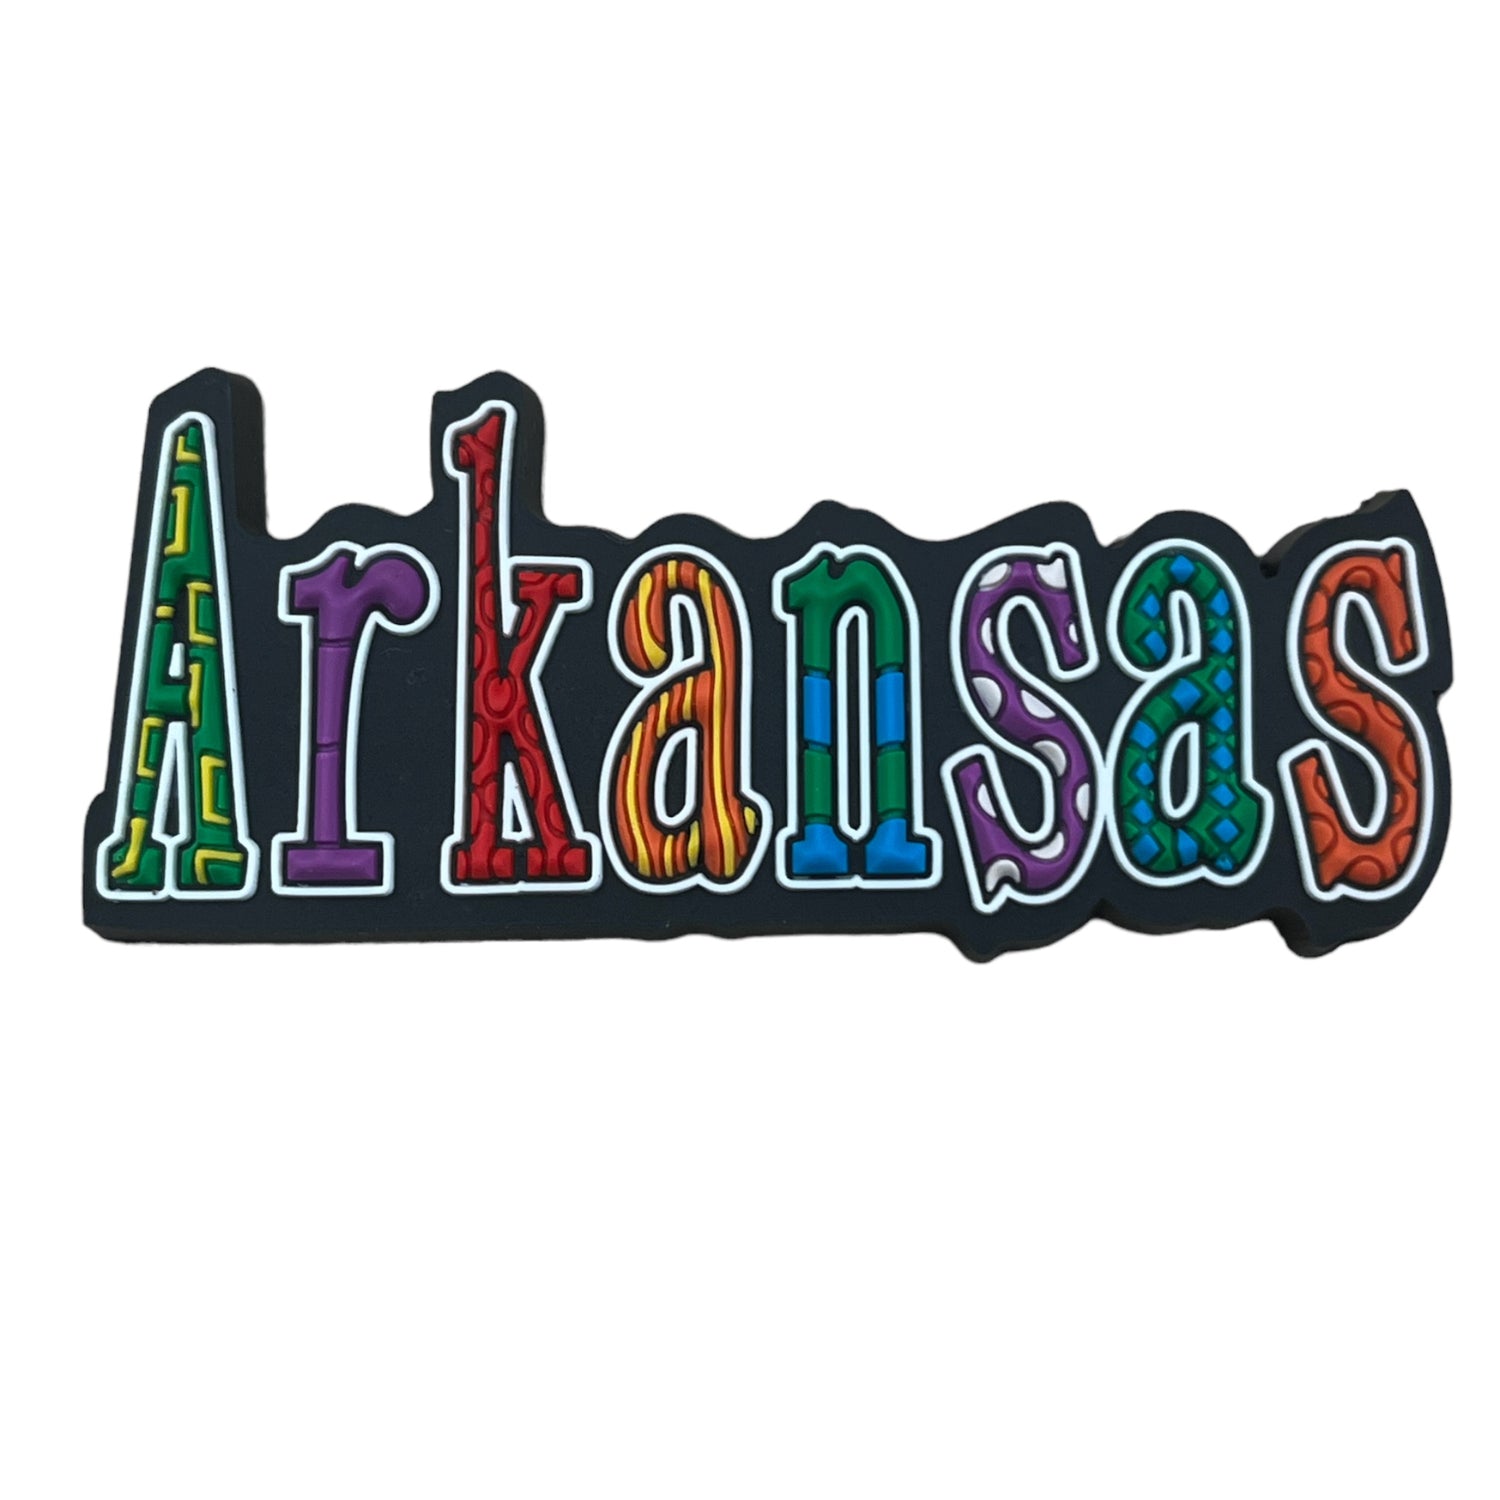 Arkansas festive magnet